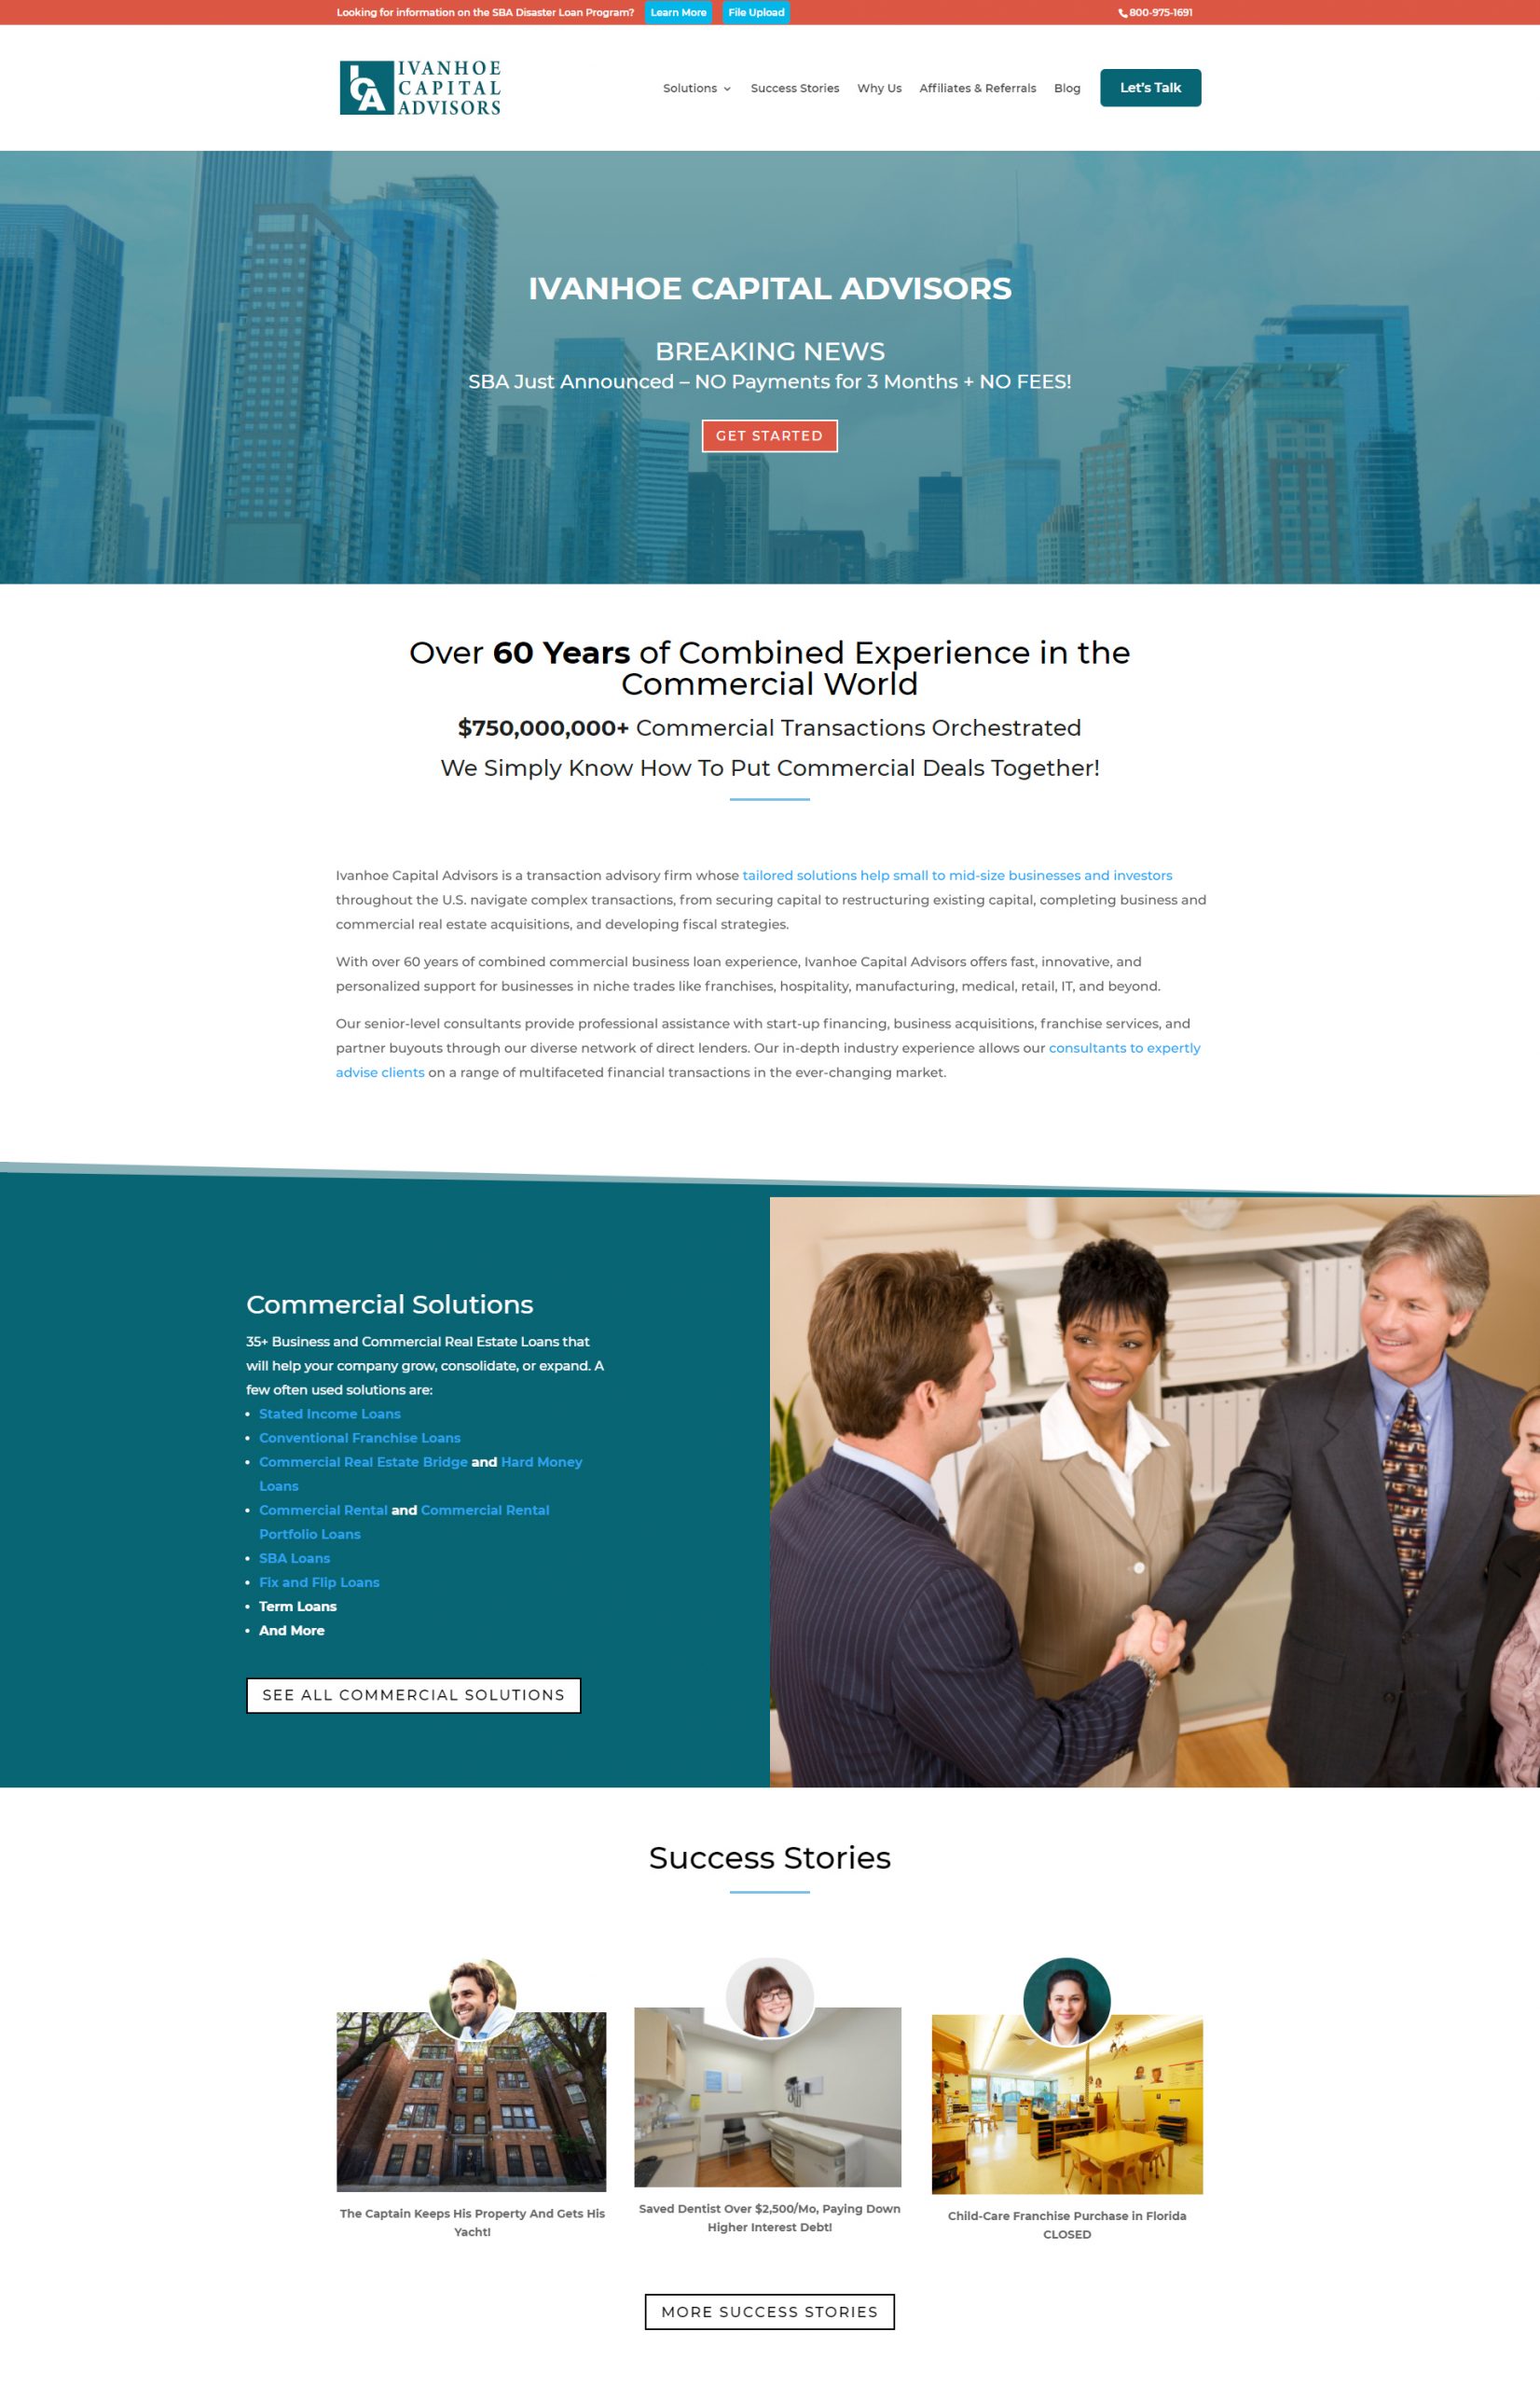 Ivanhoe Capital Website Redesign - After